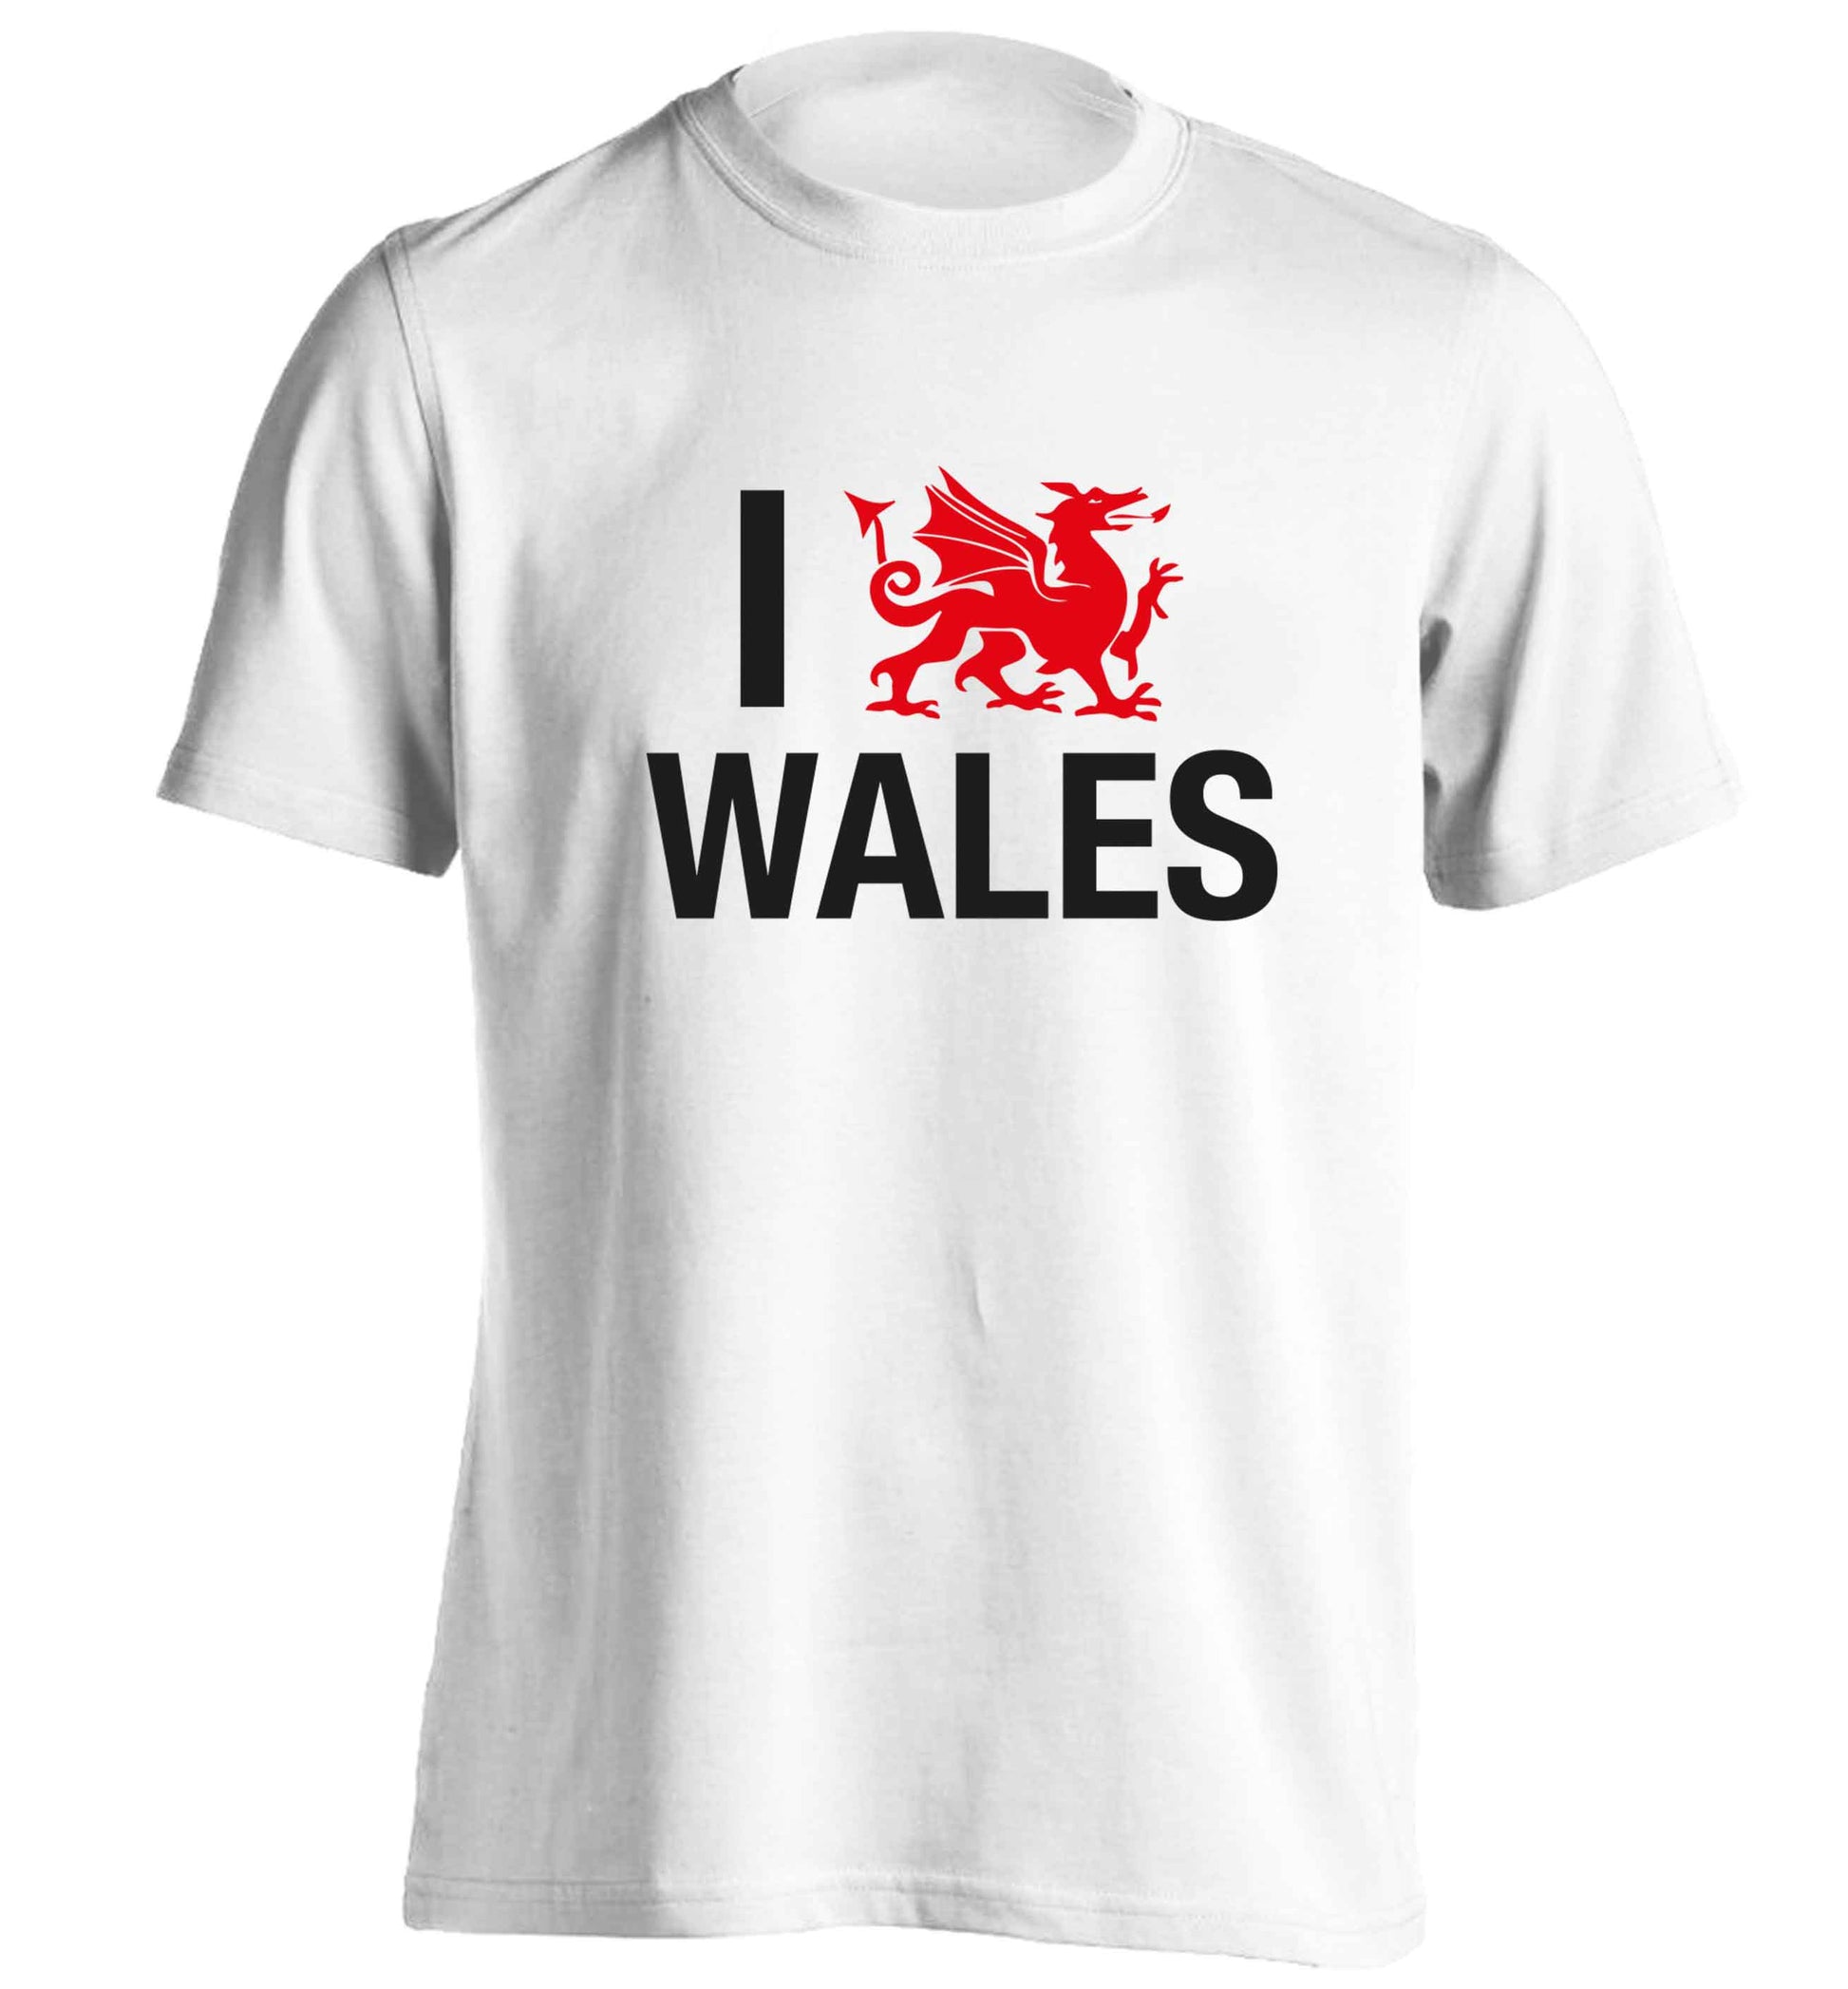 I love Wales adults unisex white Tshirt 2XL